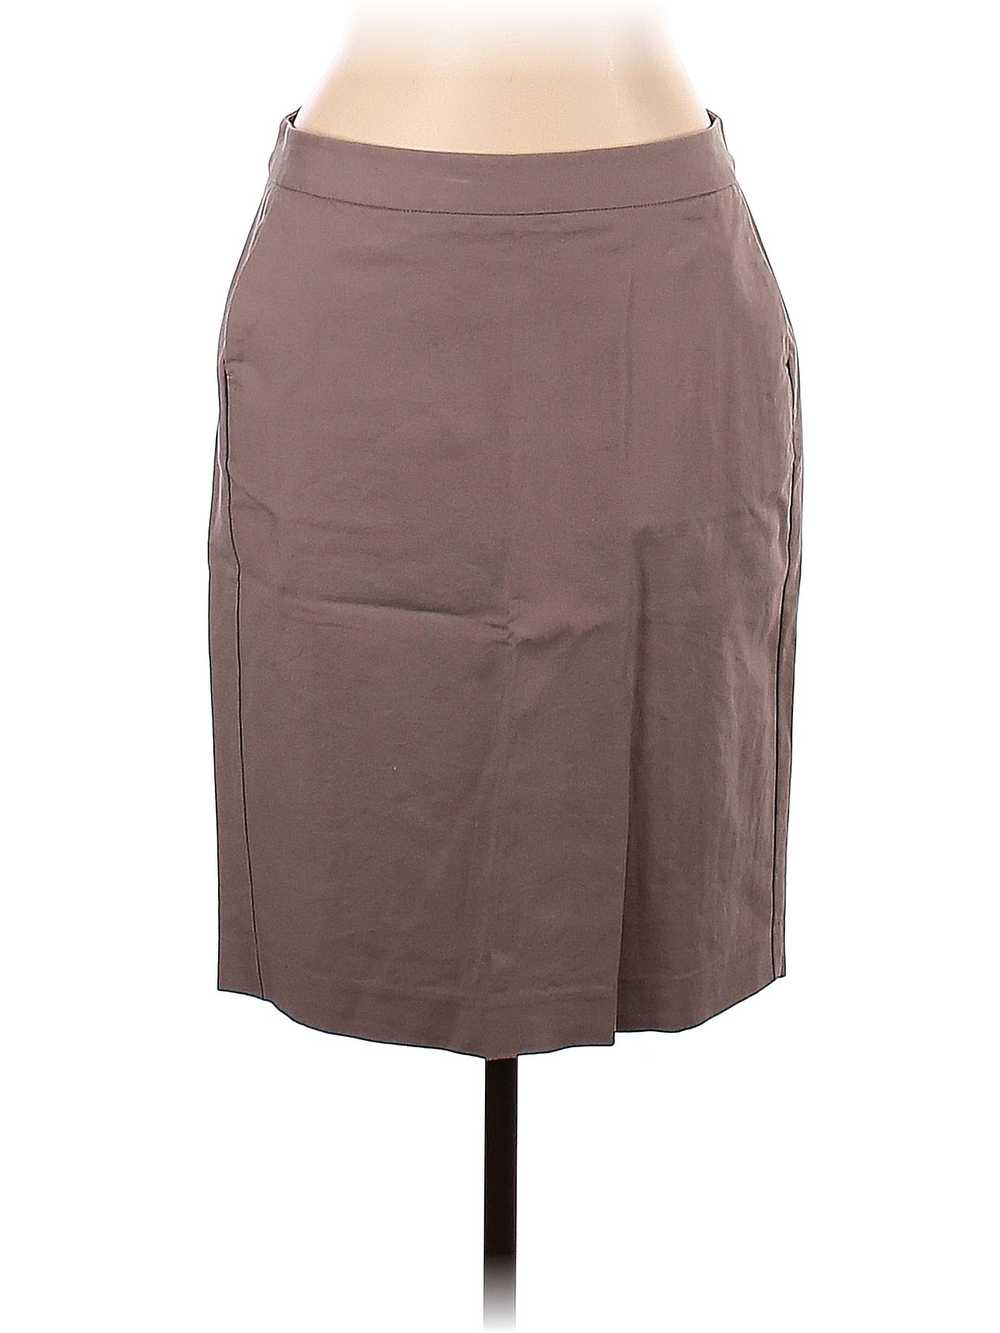 Gap Women Brown Casual Skirt 10 - image 1